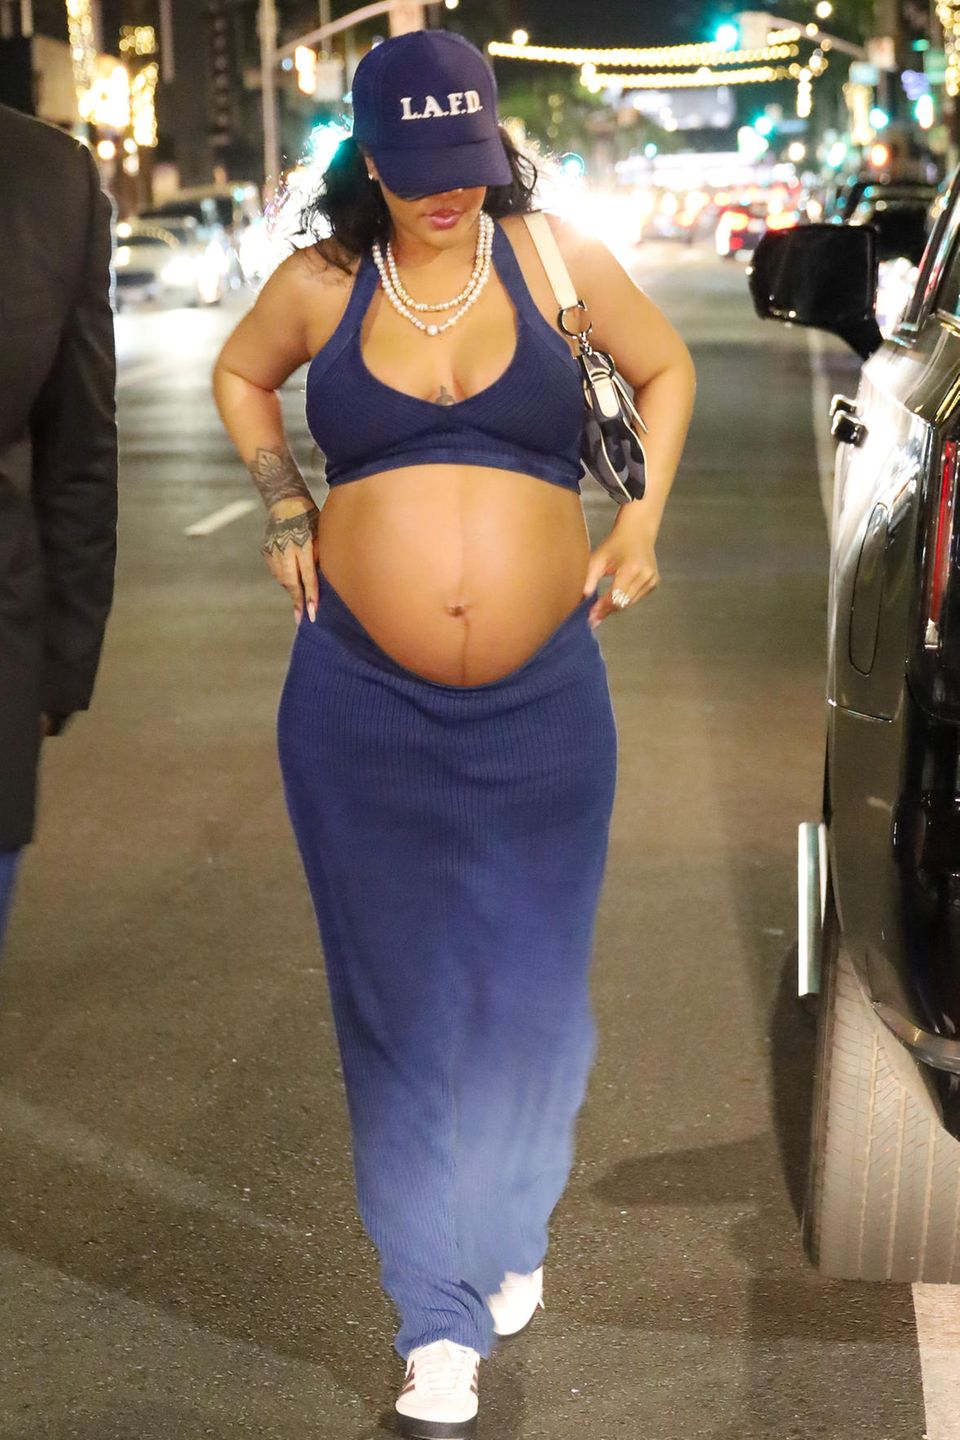 Ein weiterer Blick auf Rihannas Babybauch - sie zeigt sich im casual-chic Look mit einem low rise velvet Zweiteiler und einer Trucker-Cap. Damit zieht sie die Aufmerksamkeit wieder voll und ganz auf ihren Bauch.